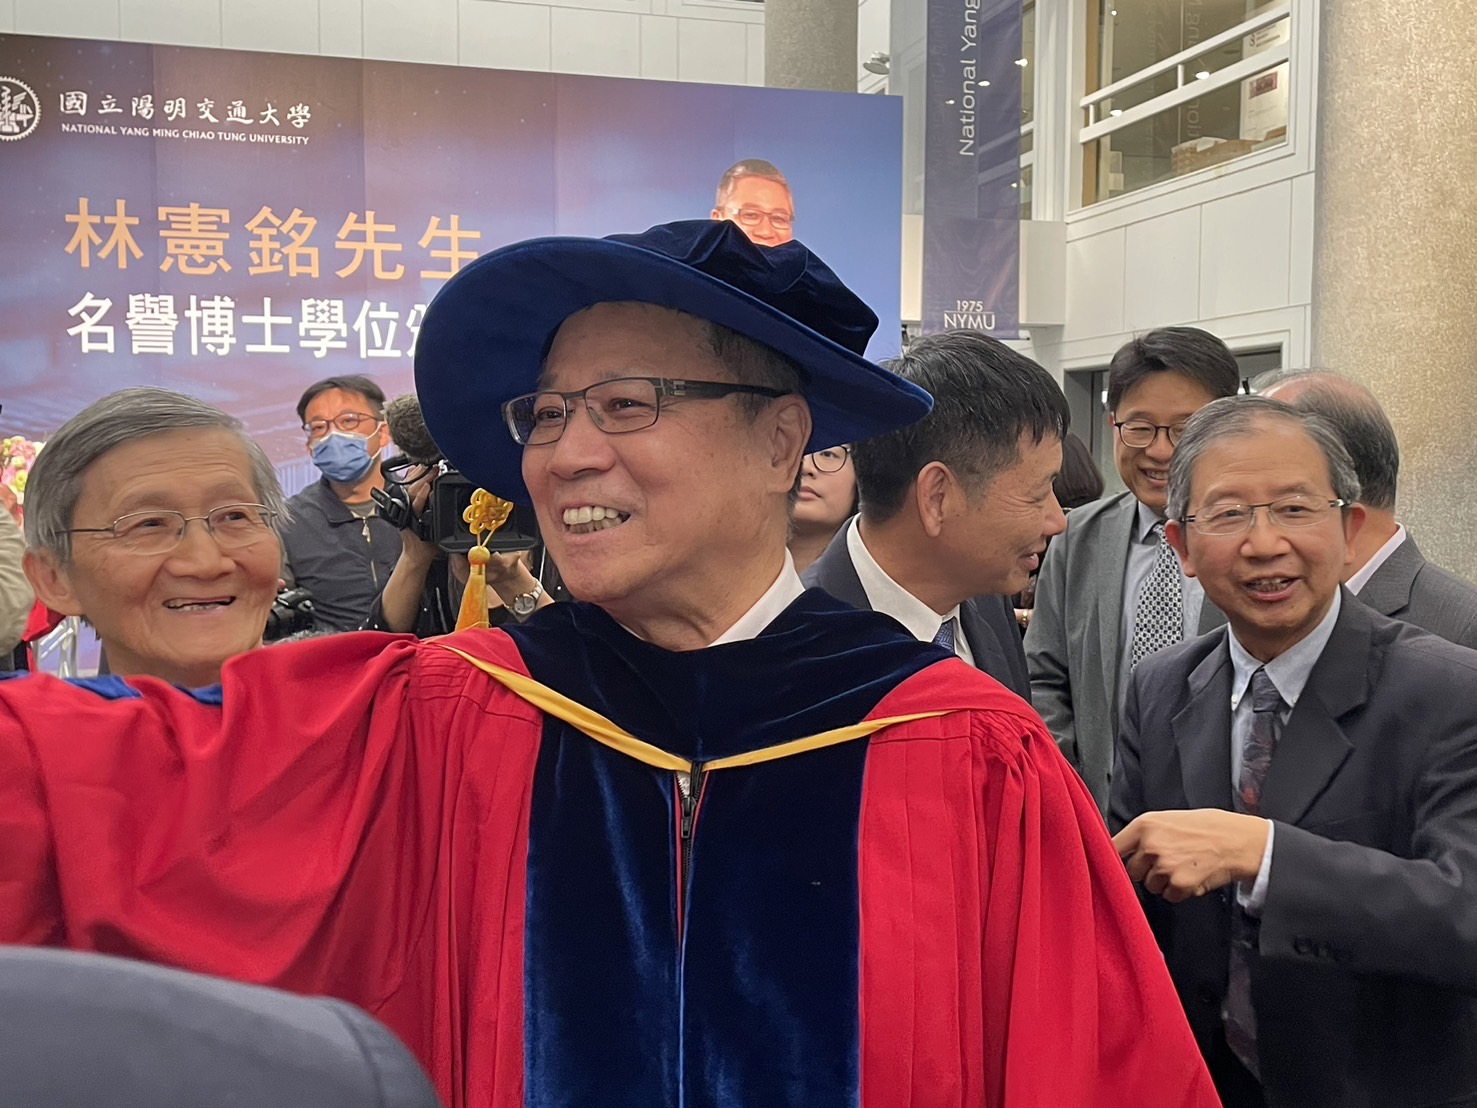 纬创董事长林宪铭获颁阳明交大名誉博士。林薏茹／摄影